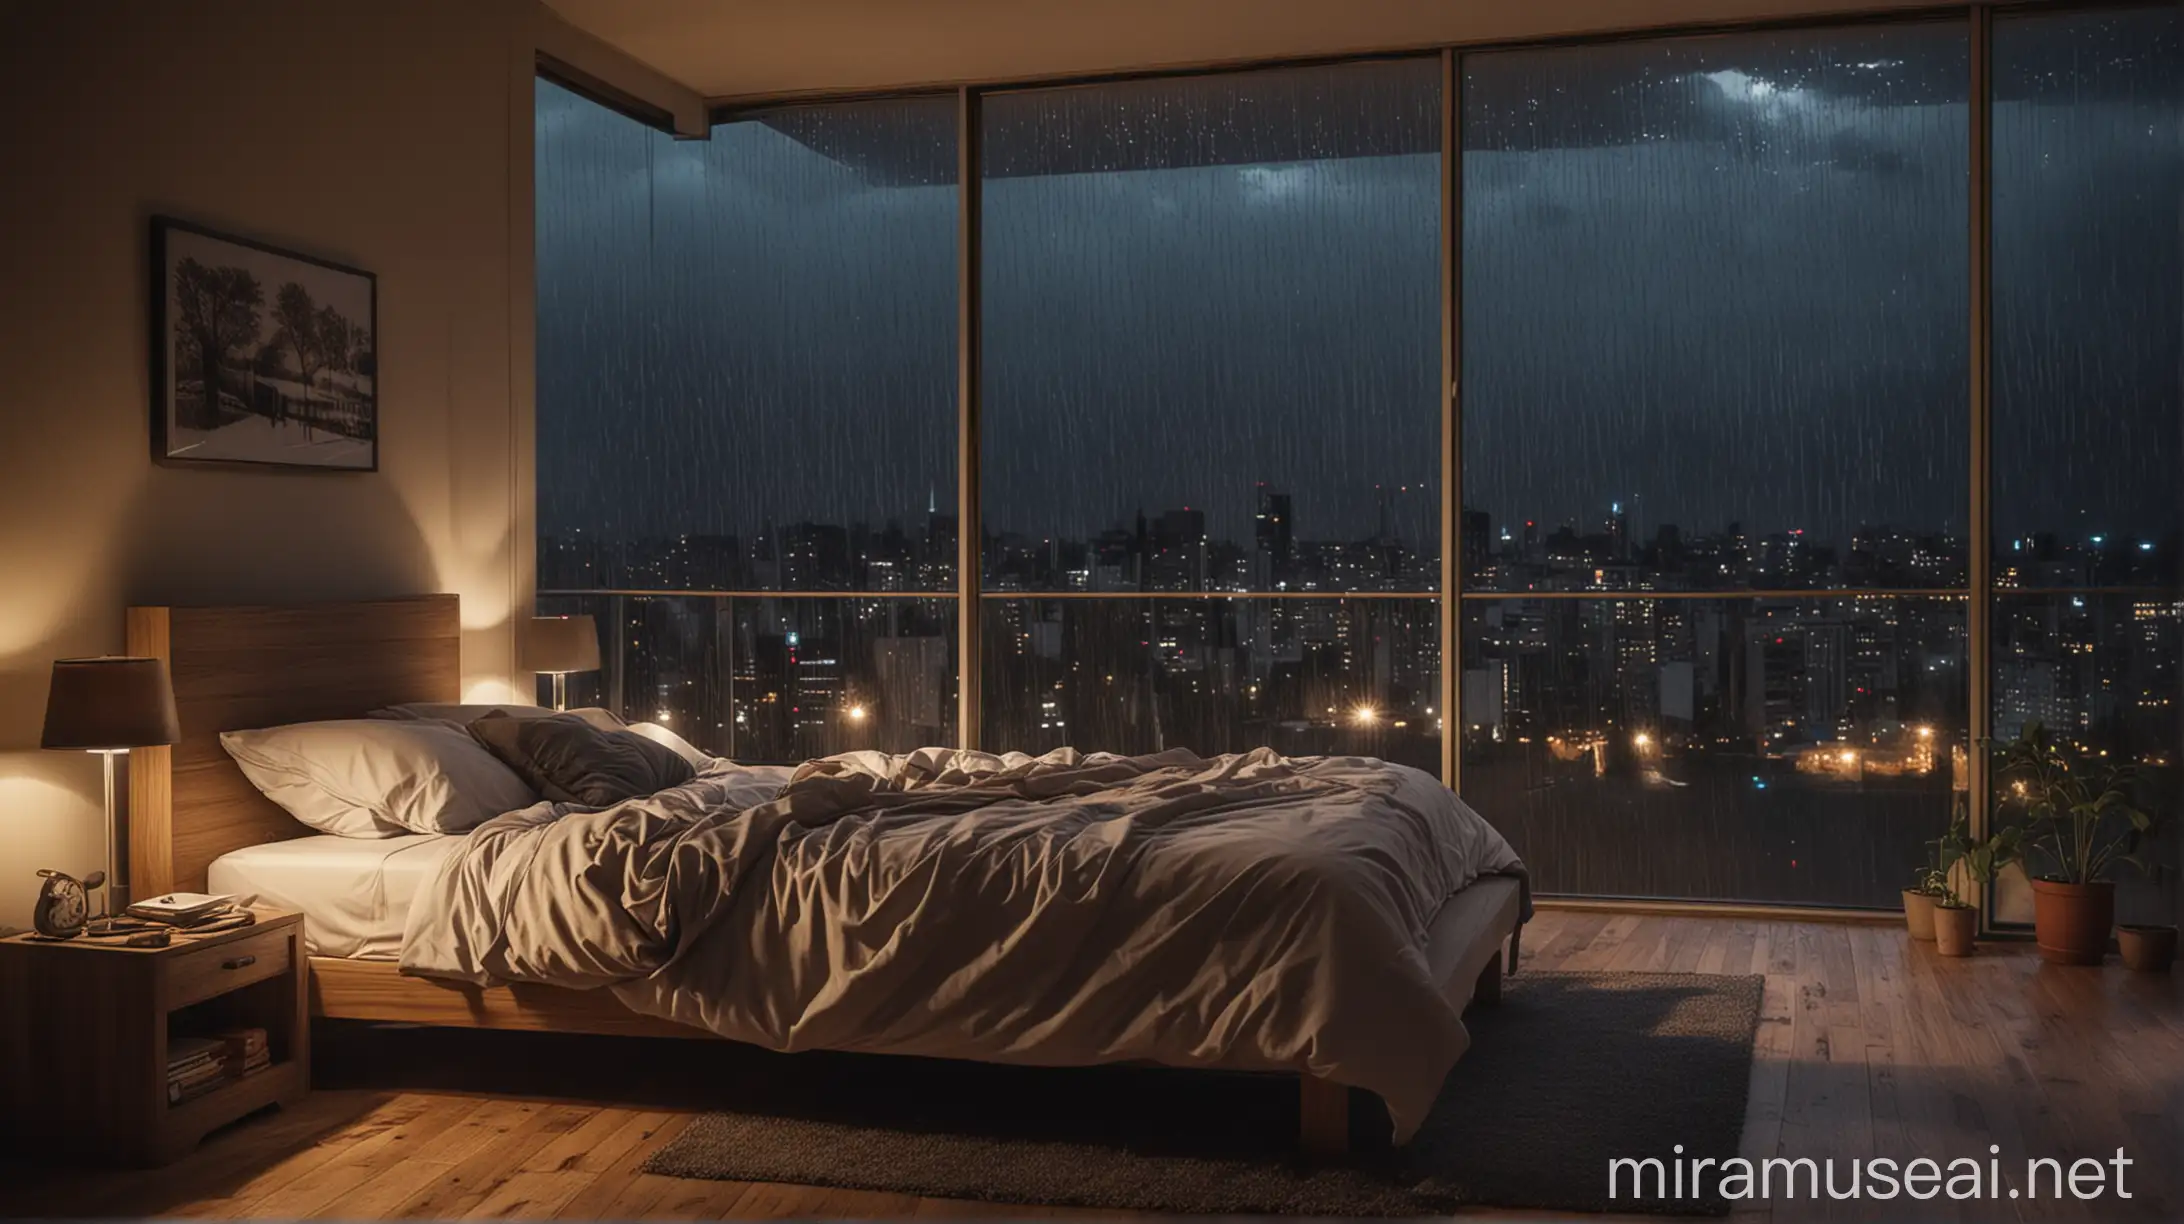 kamar tidur malam hari 
dengan suasana hujan